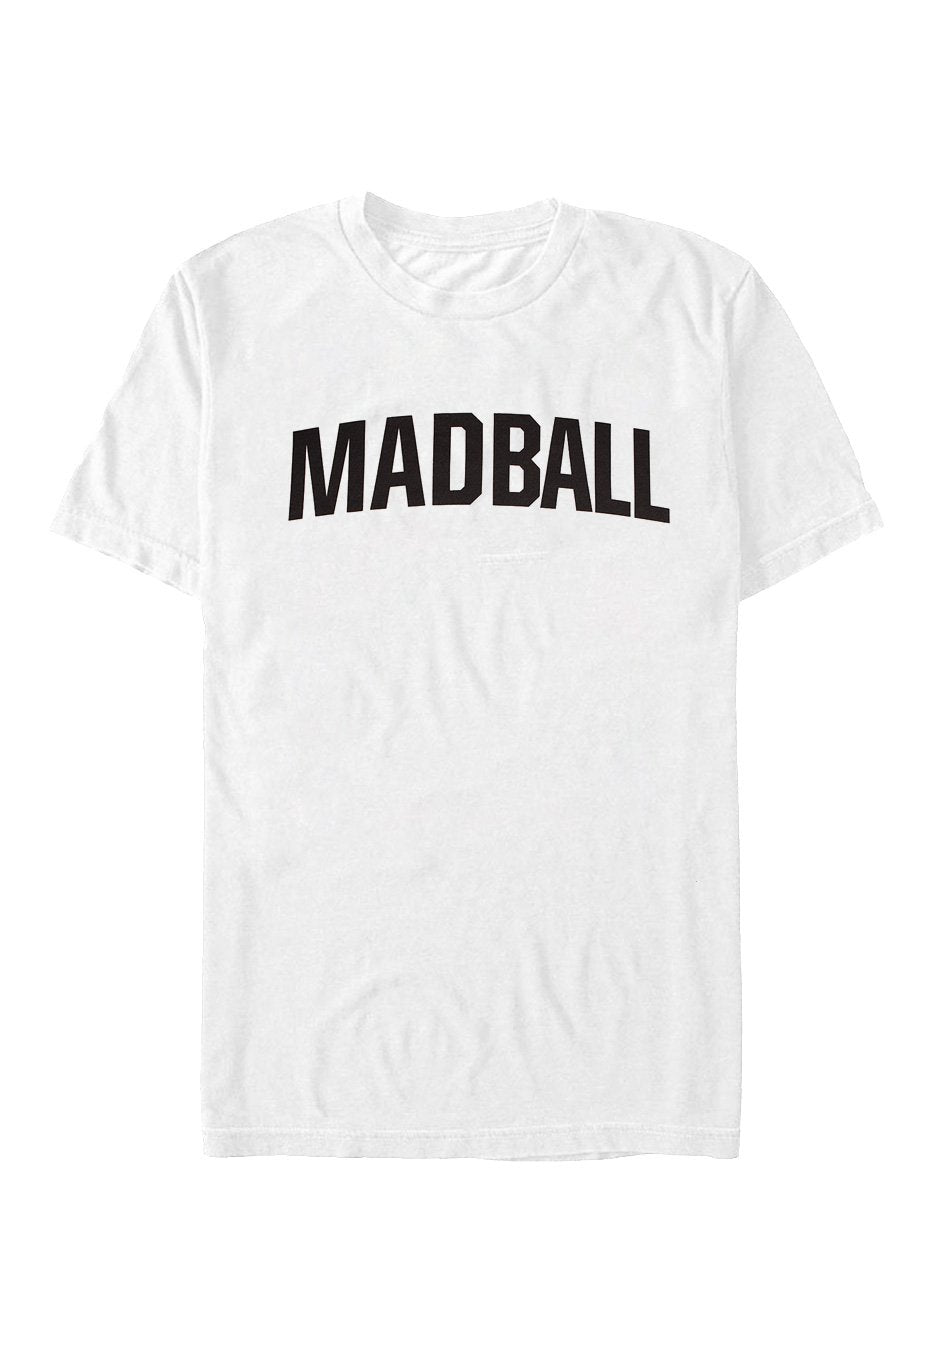 Madball - HID White - T-Shirt